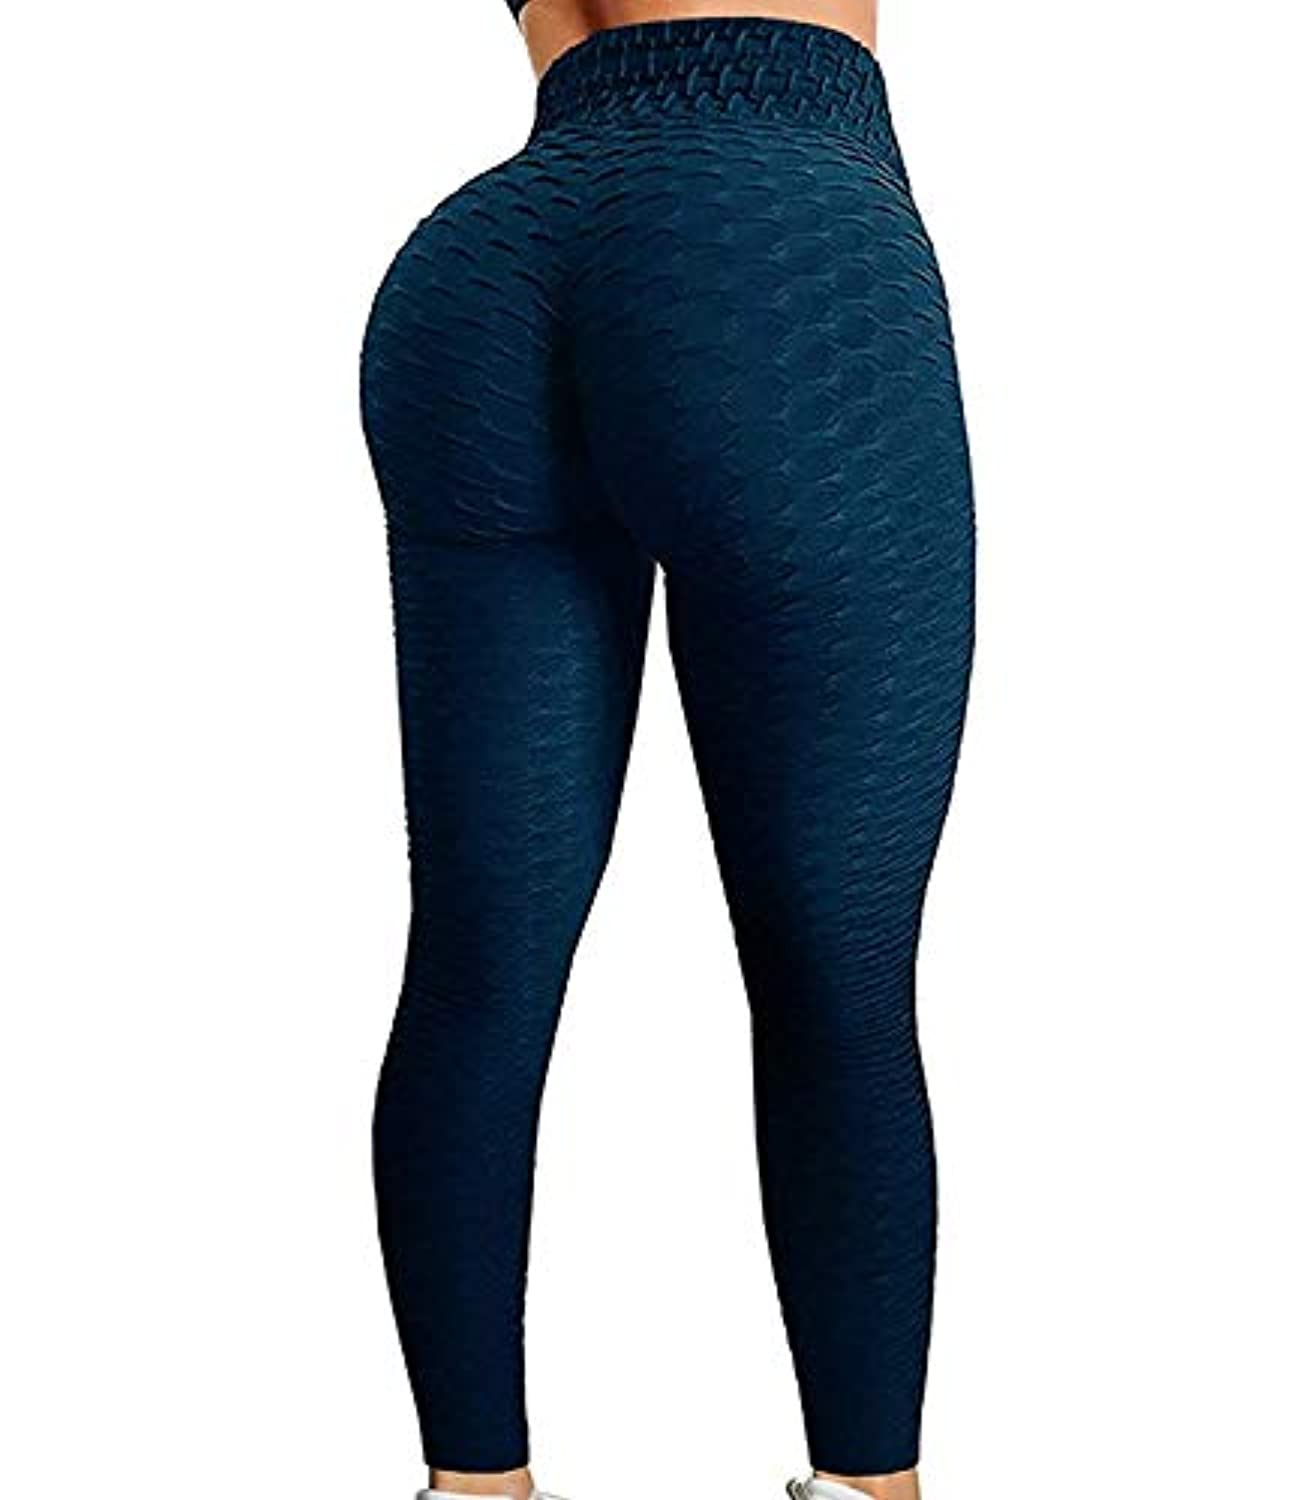 FITTOO - Pantalones leggings ajustados de yoga para mujer, con